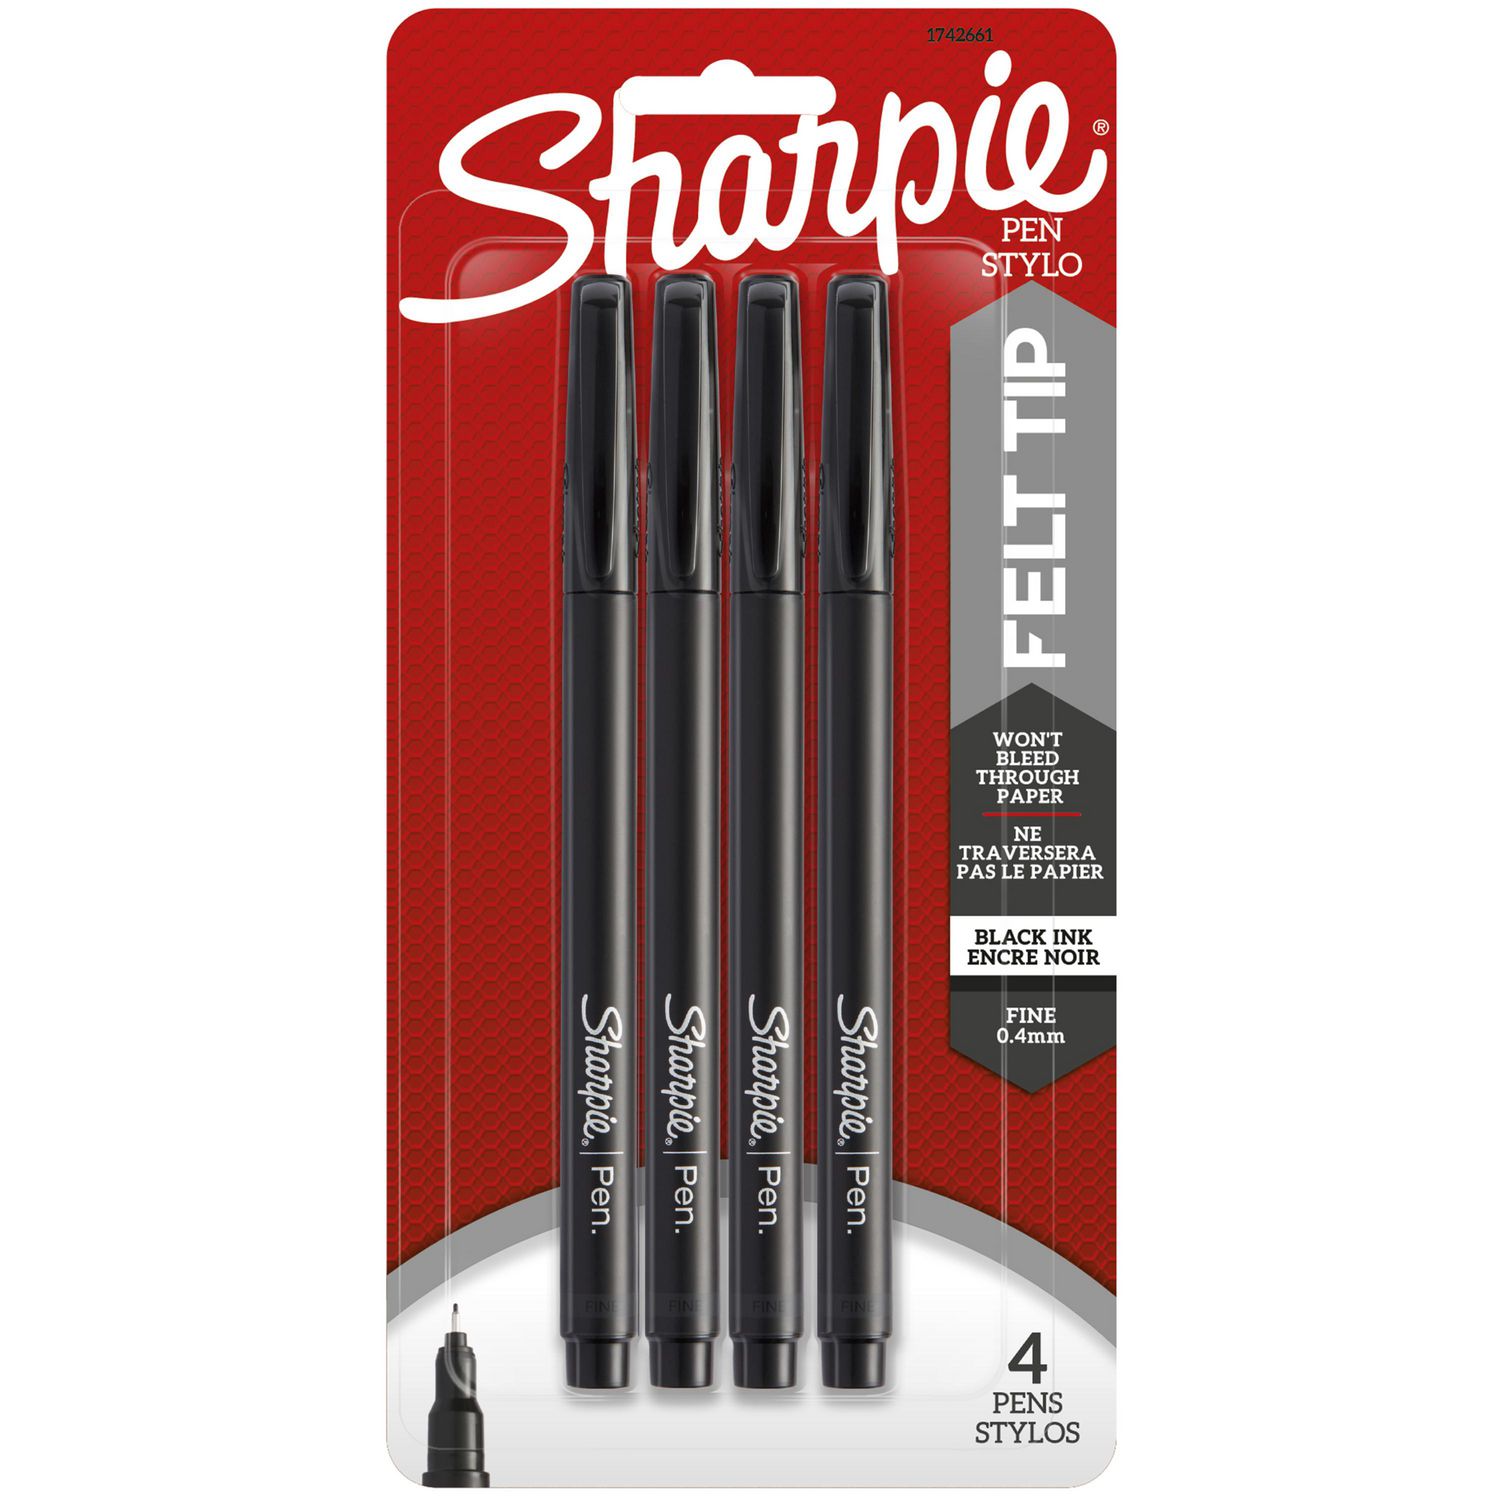 Sharpie Felt Tip Pens, Fine Point (0.4mm), Black, 4 Count, Quick